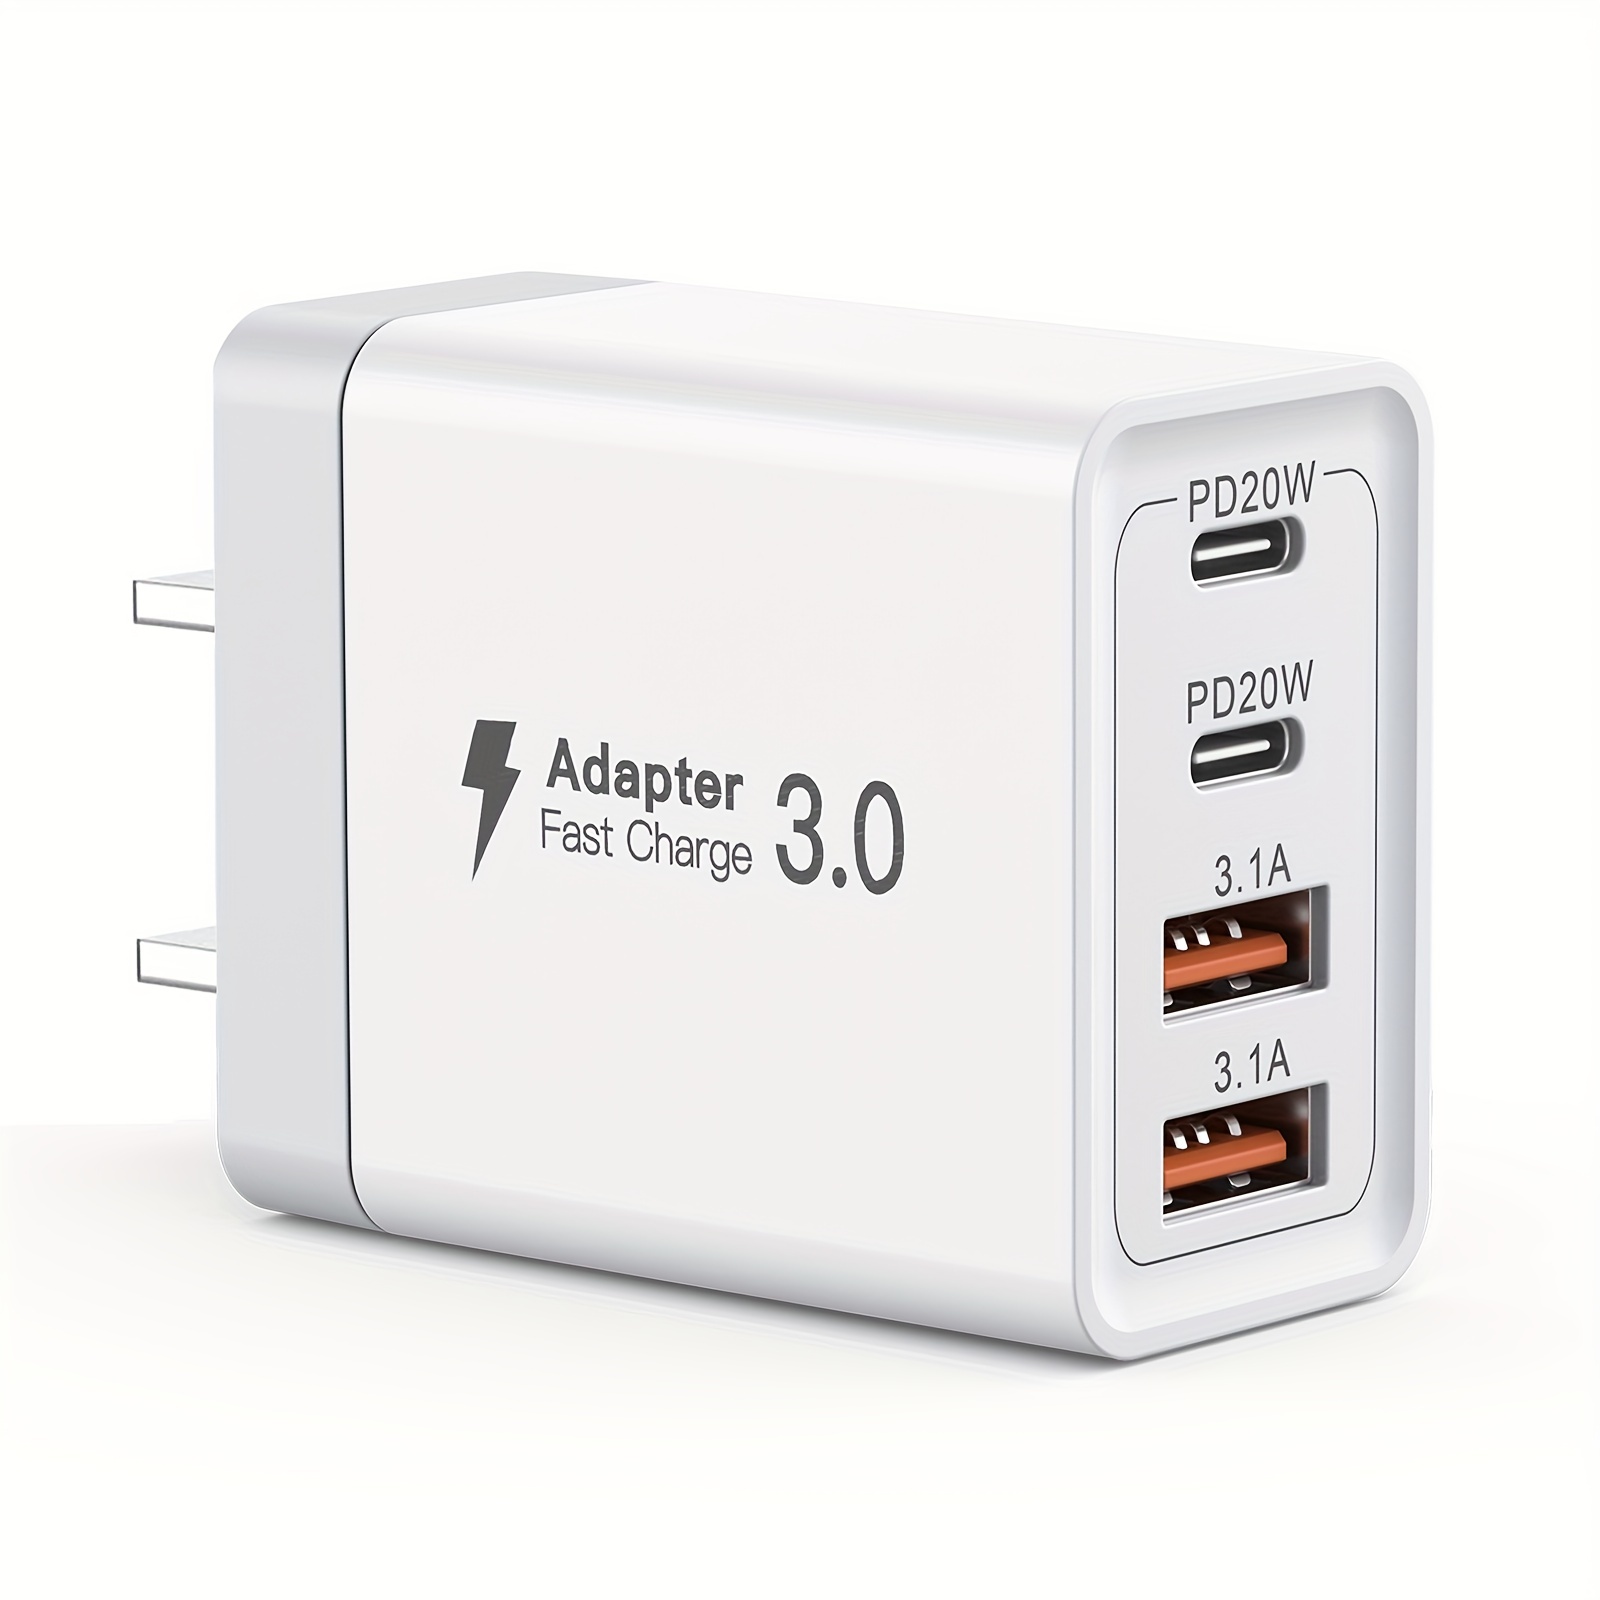 PowerPort 4 Anker (cargador de 4 puertos USB de 40 W) cargador USB con  puertos múltiples con enchufe plegable para iPhone 6 / 6 Plus, iPad Air 2 y